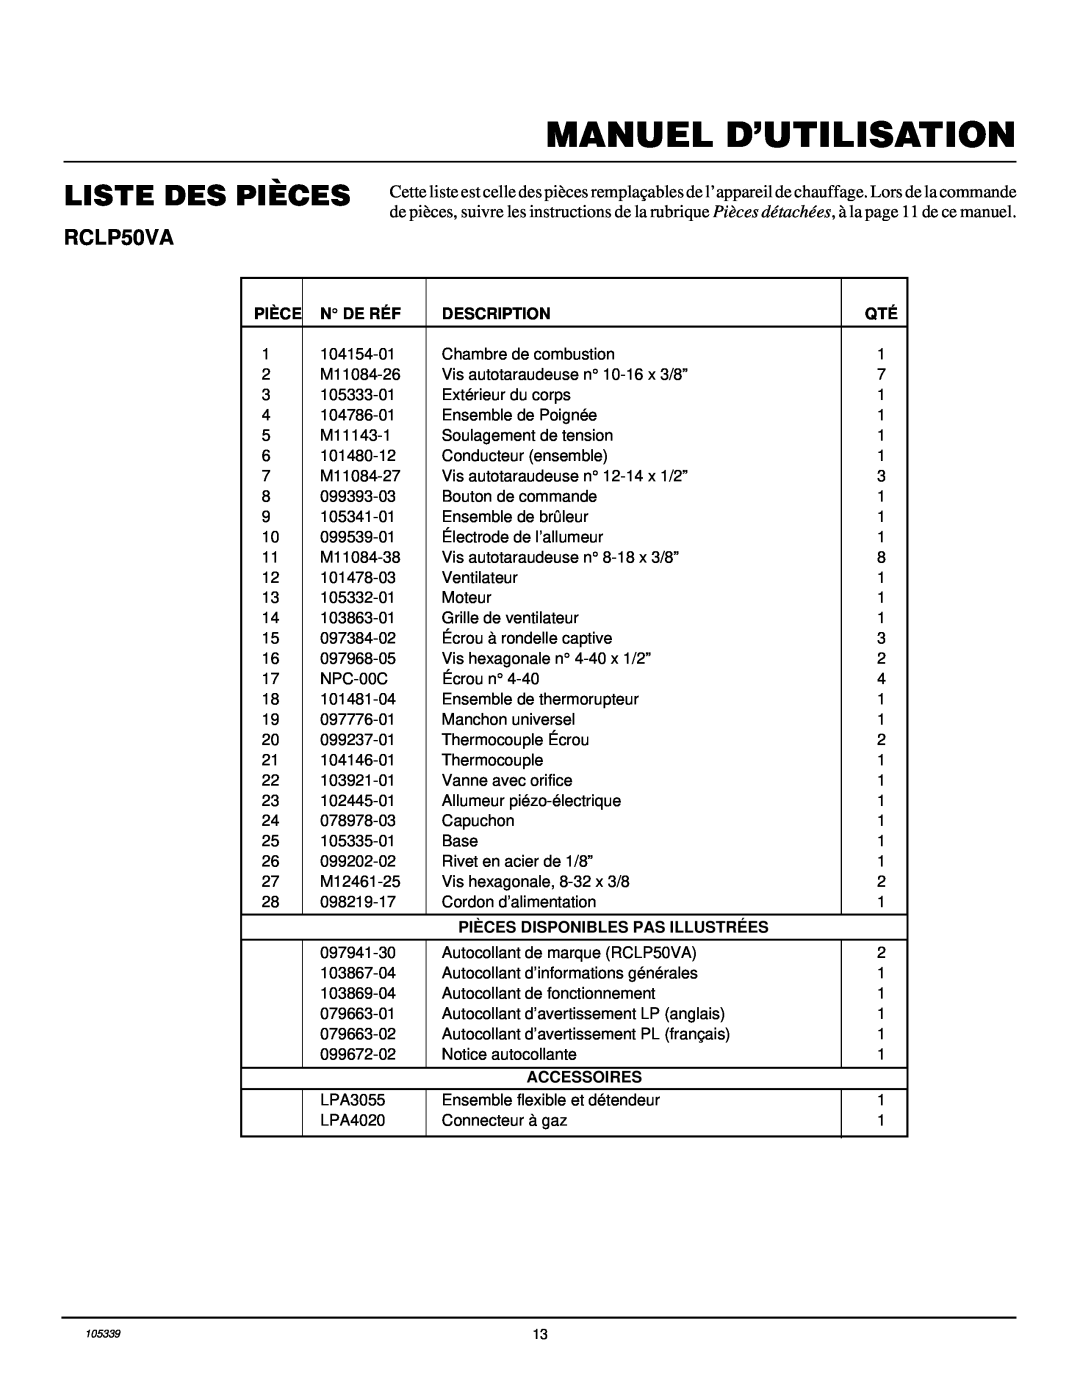 Desa RCLP50VA owner manual Liste Des Pièces, Manuel D’Utilisation, N De Réf, Description, Pièces Disponibles Pas Illustrées 